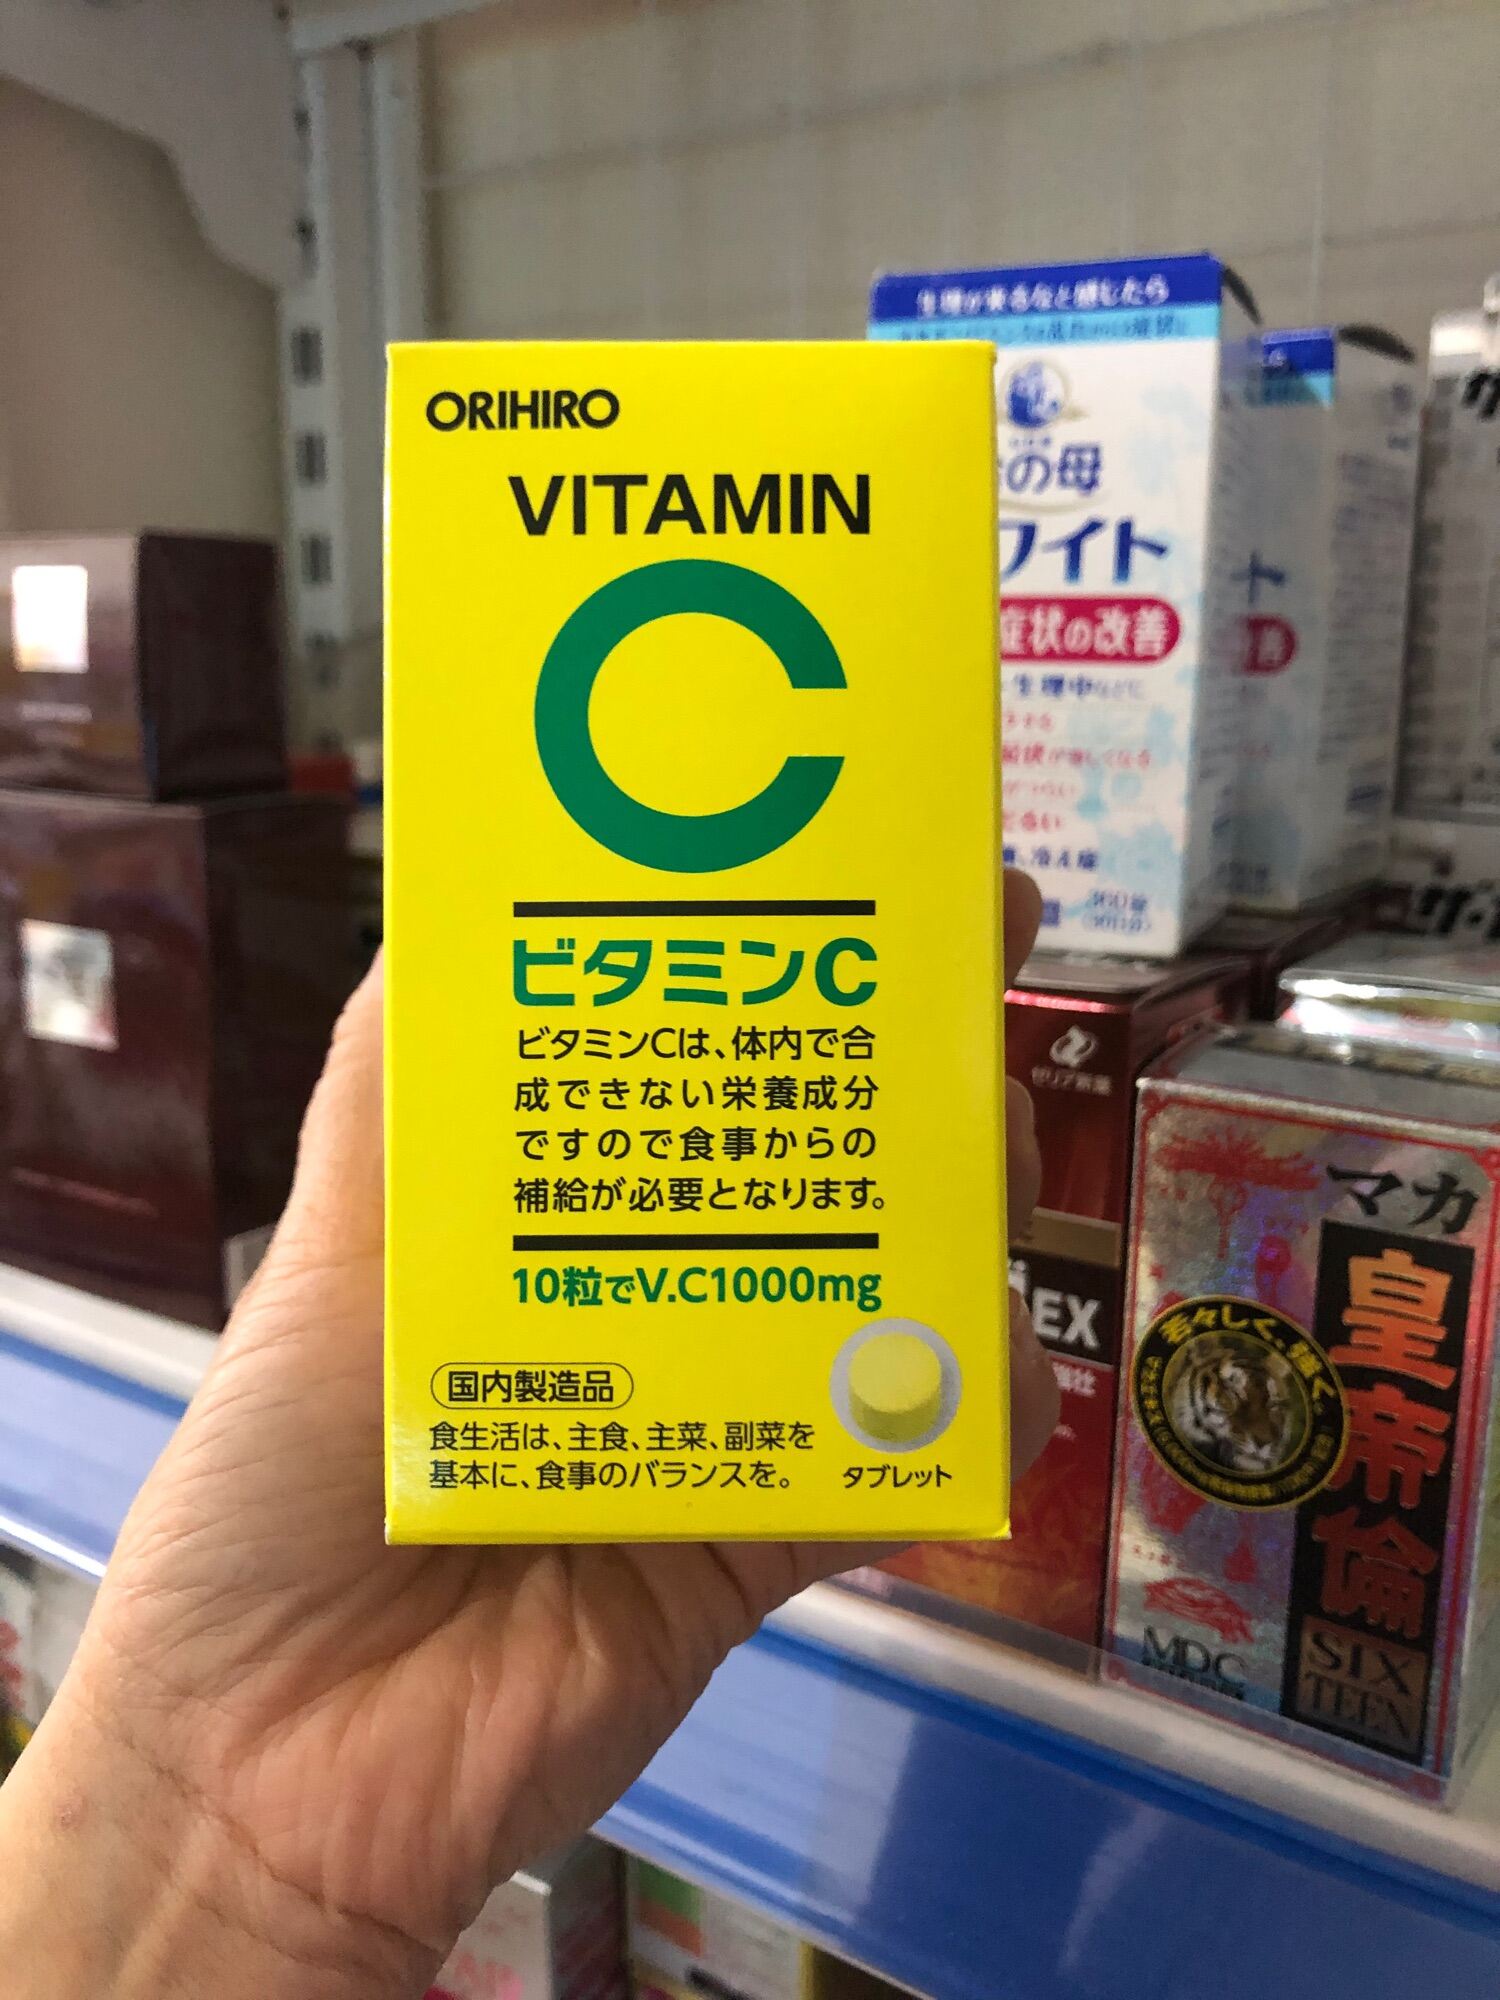 Viên uống bổ sung Vitamin C Orihiro 300 viên